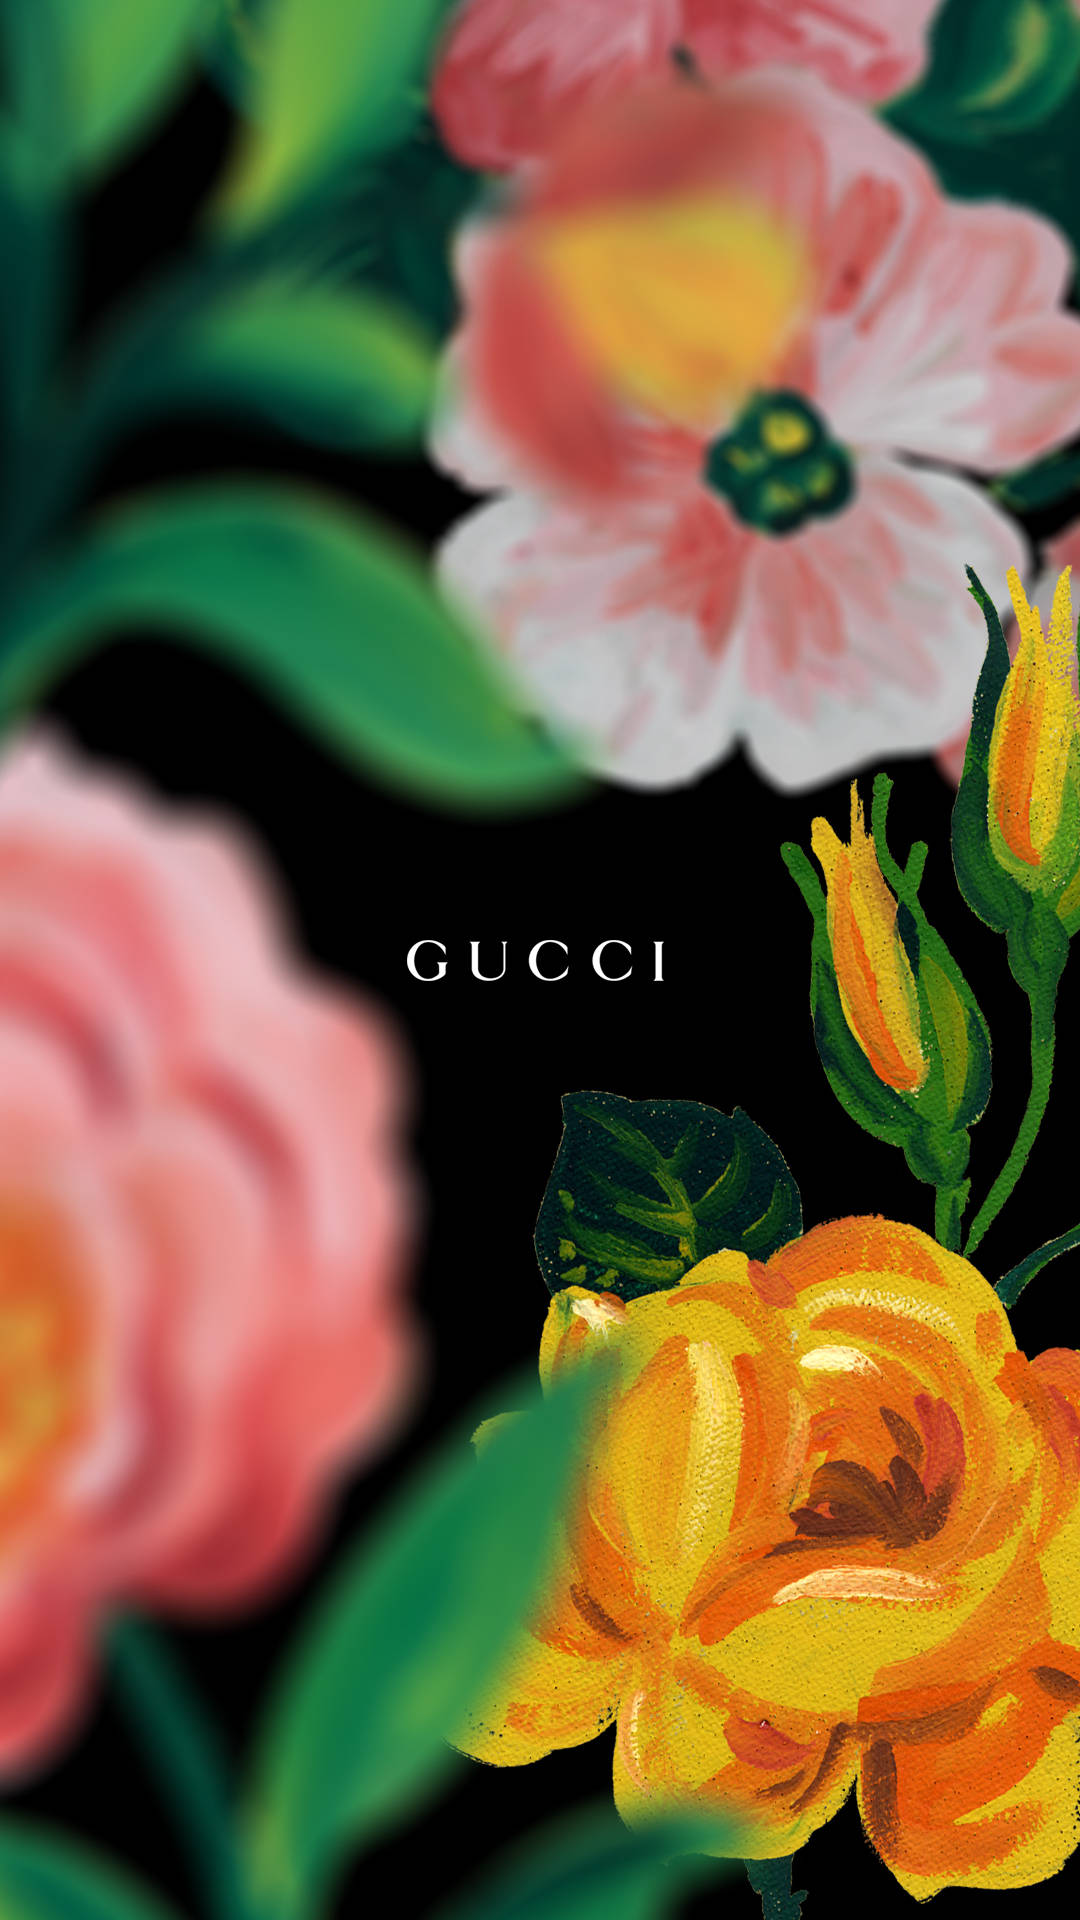 Download Floral Gucci Iphone Wallpaper | Wallpapers.com